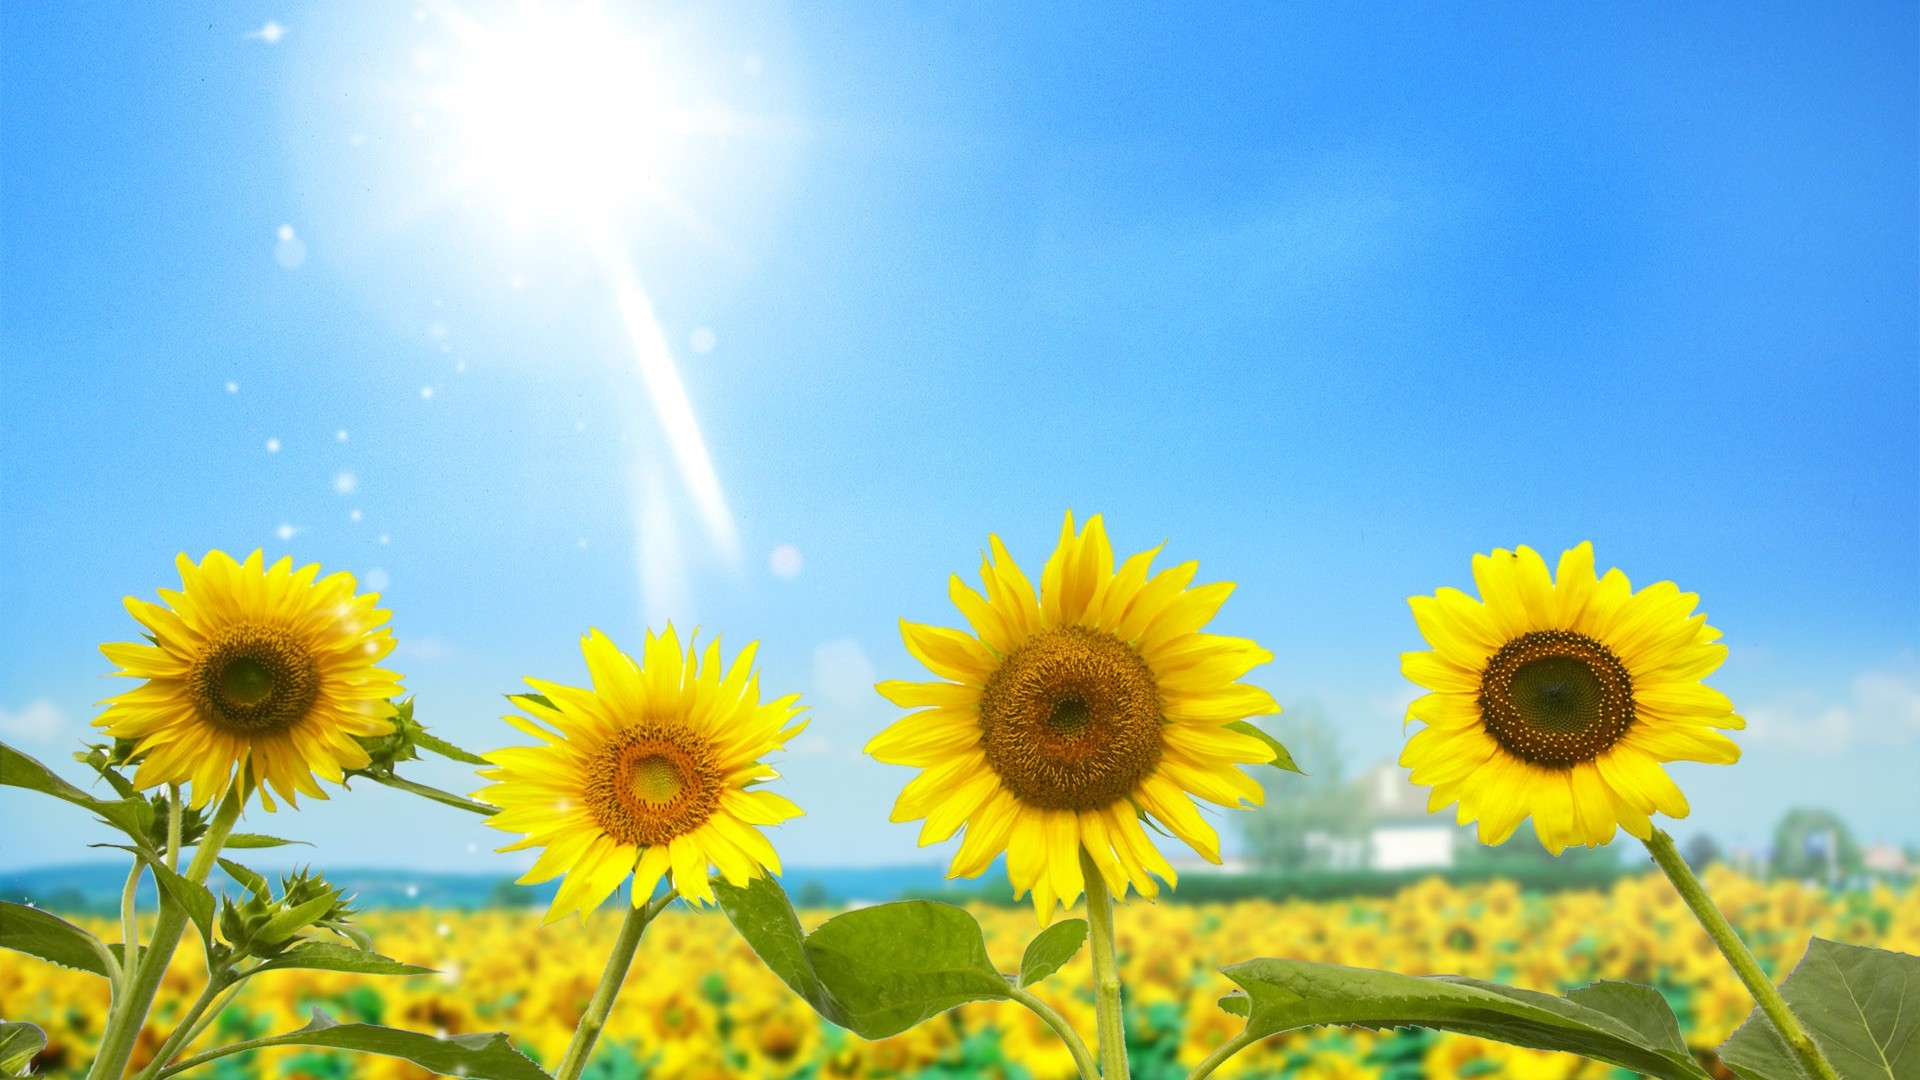 Resultado de imagem para sunflower summer